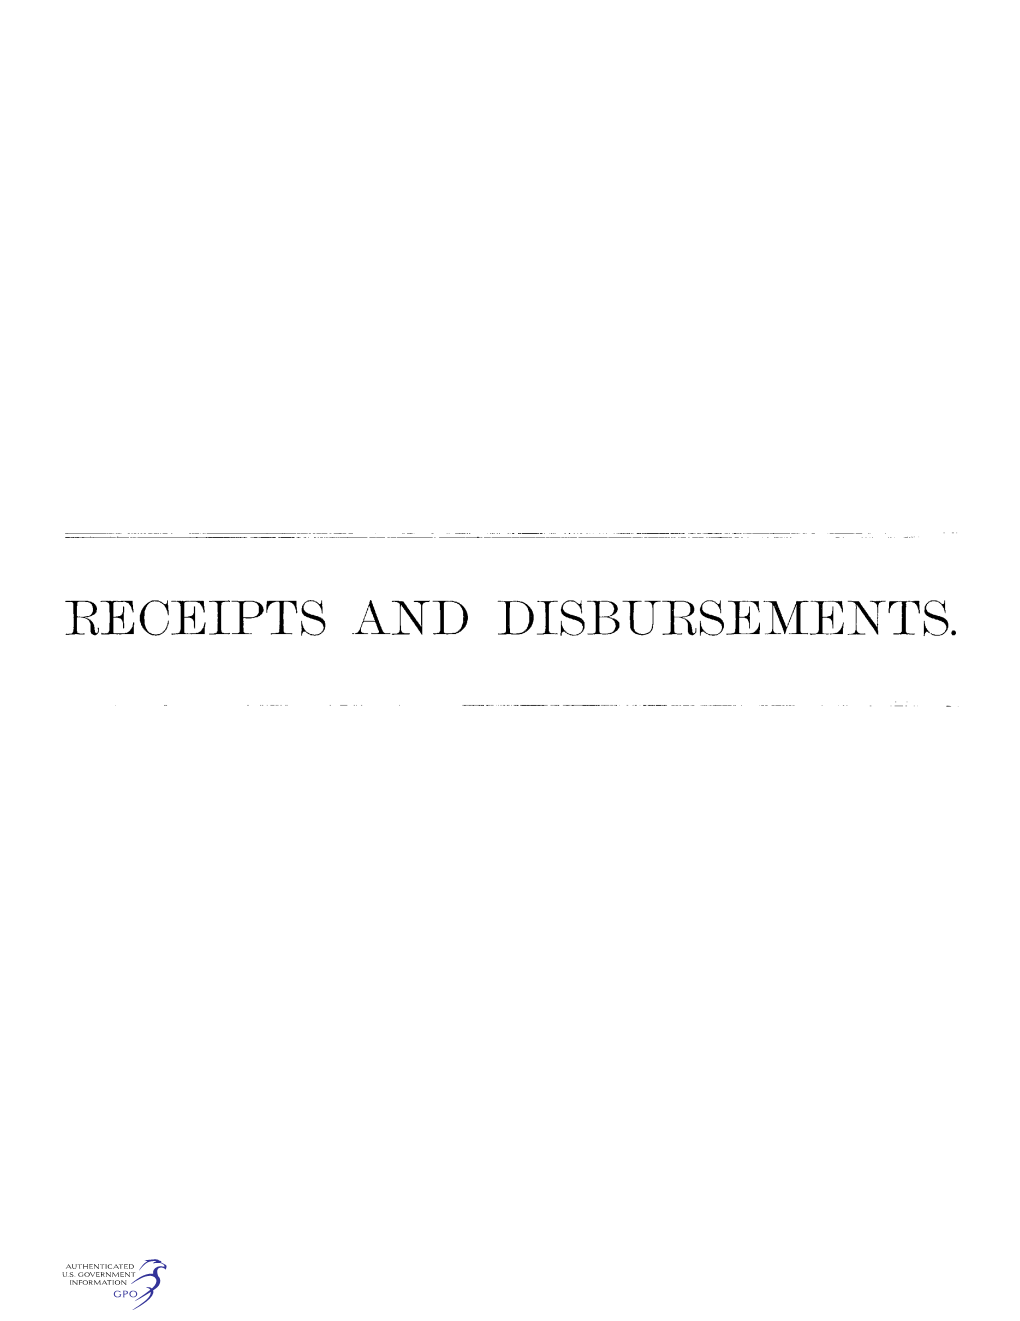 Receipts and Disbursements